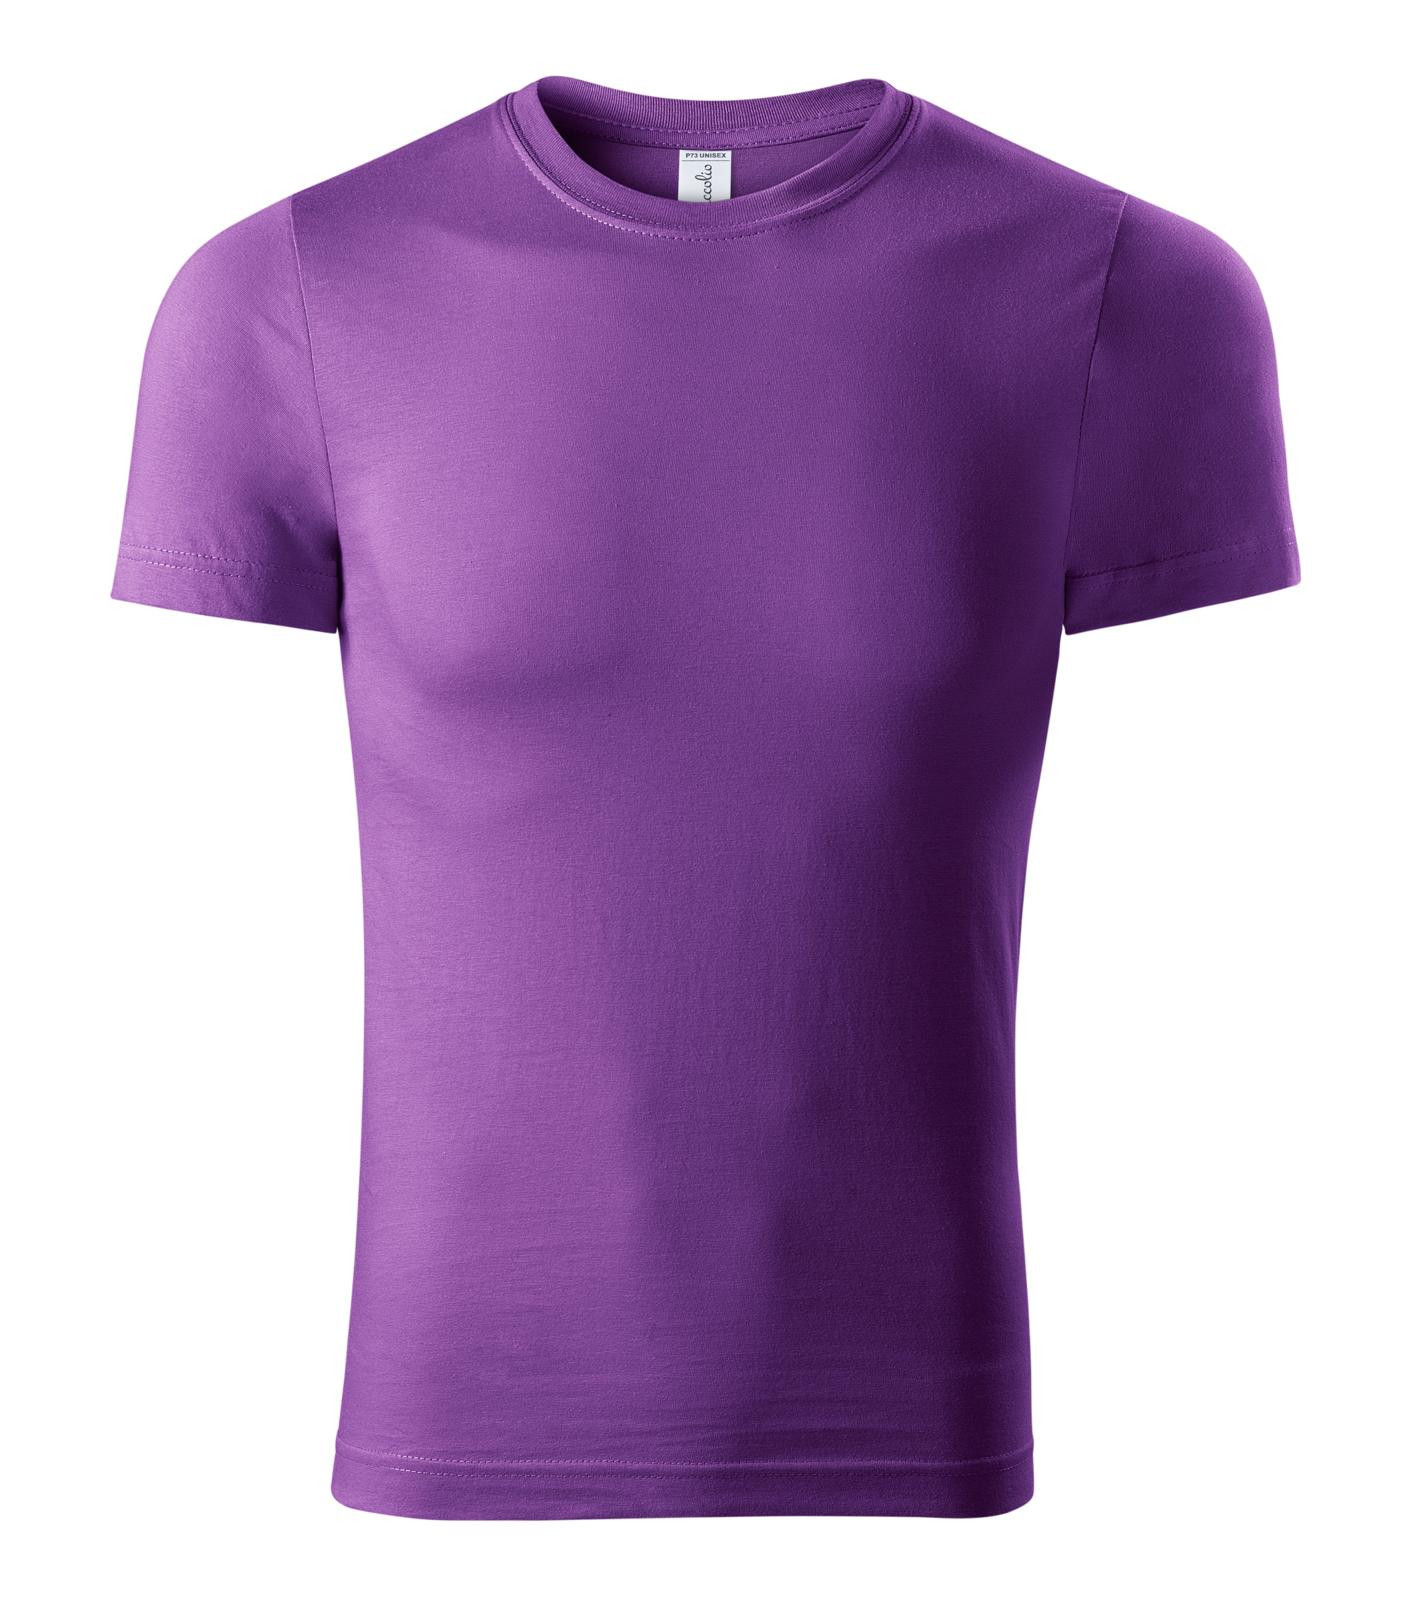 Unisex tričko Piccolio Paint P73 - veľkosť: S, farba: fialová